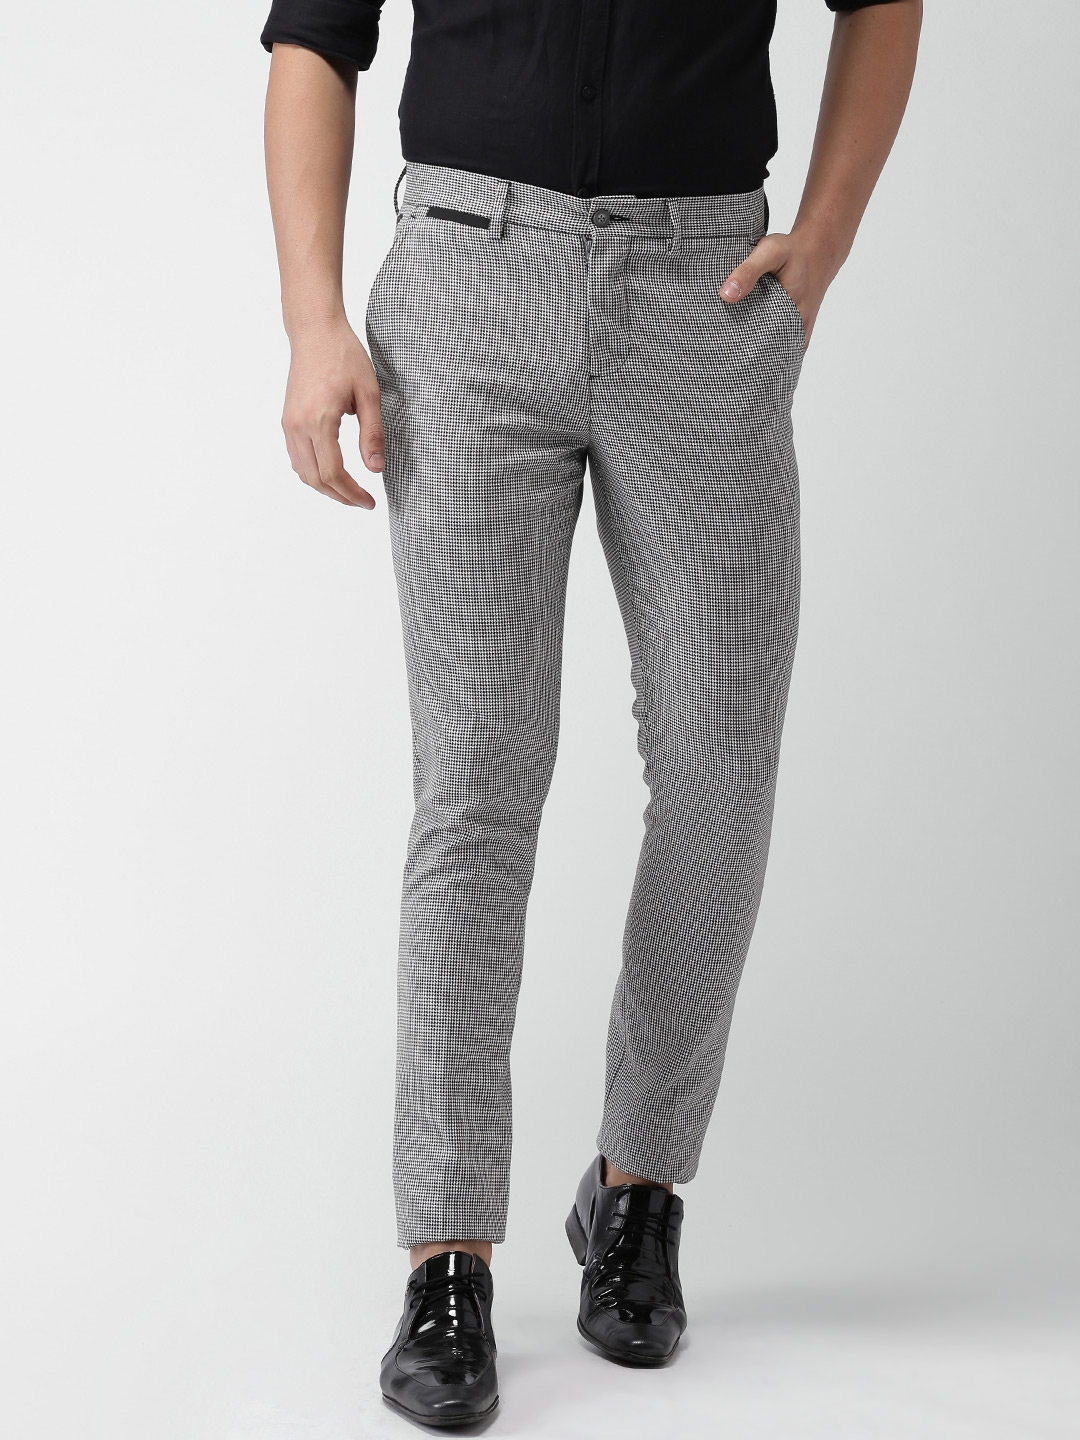 Buy Black Slim Fit Solid Trousers for Men Online at Killer  499448